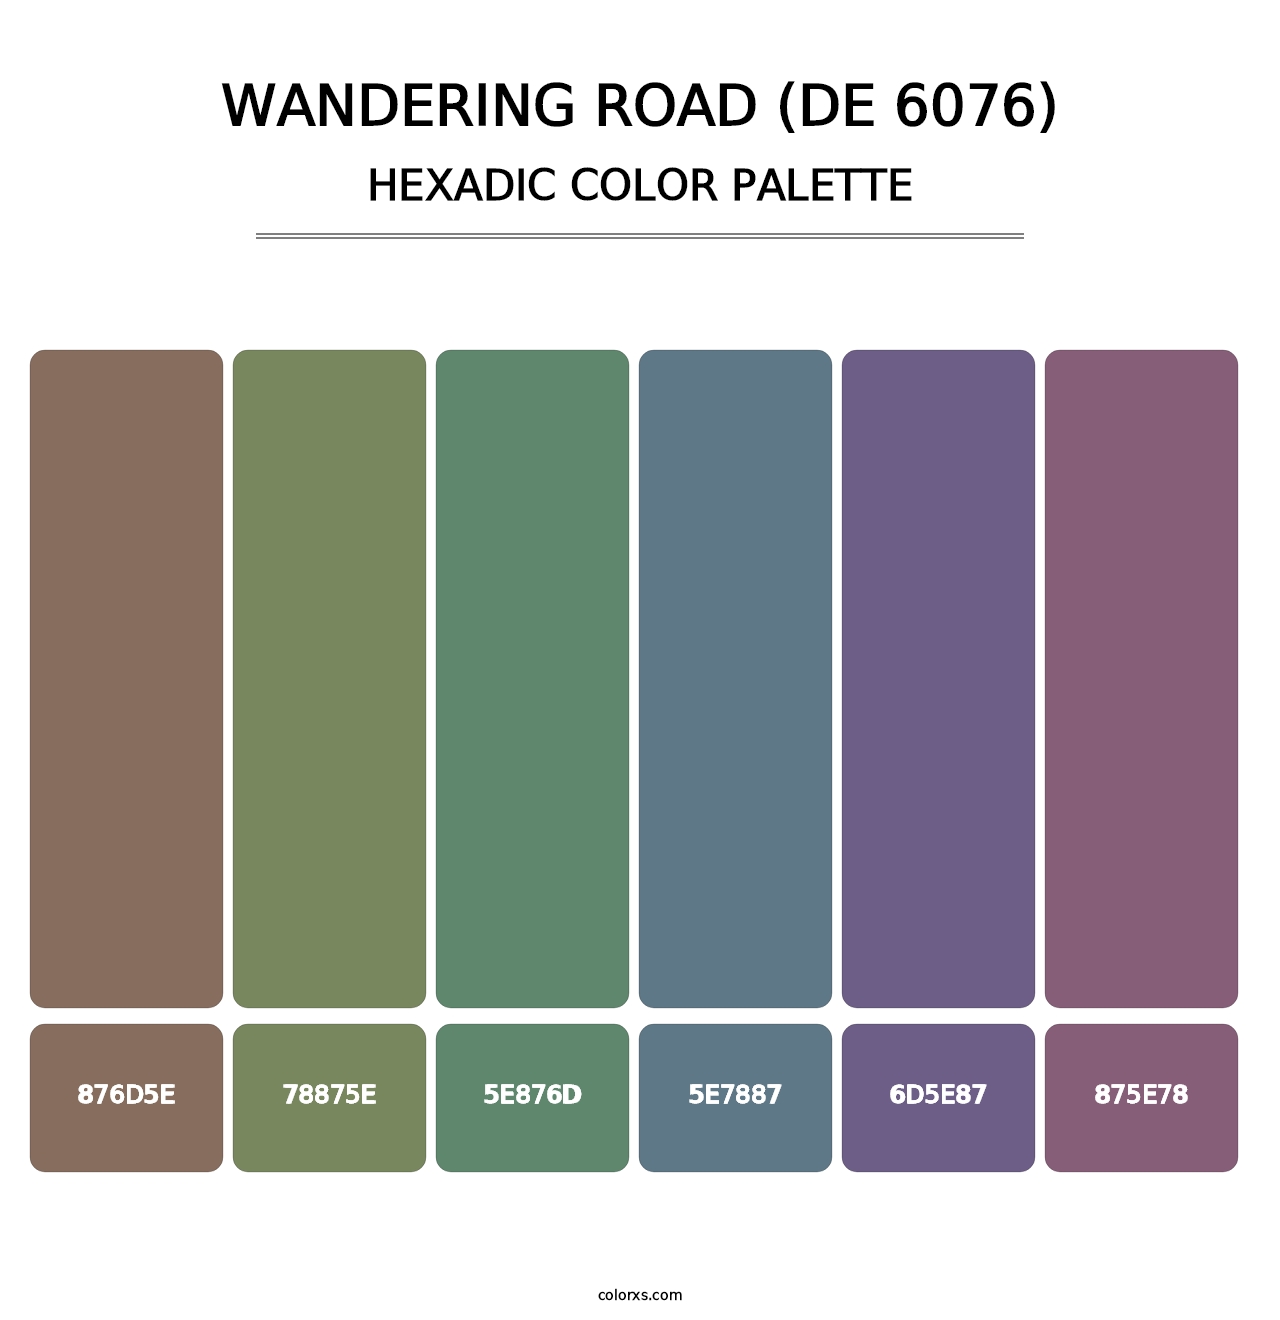 Wandering Road (DE 6076) - Hexadic Color Palette